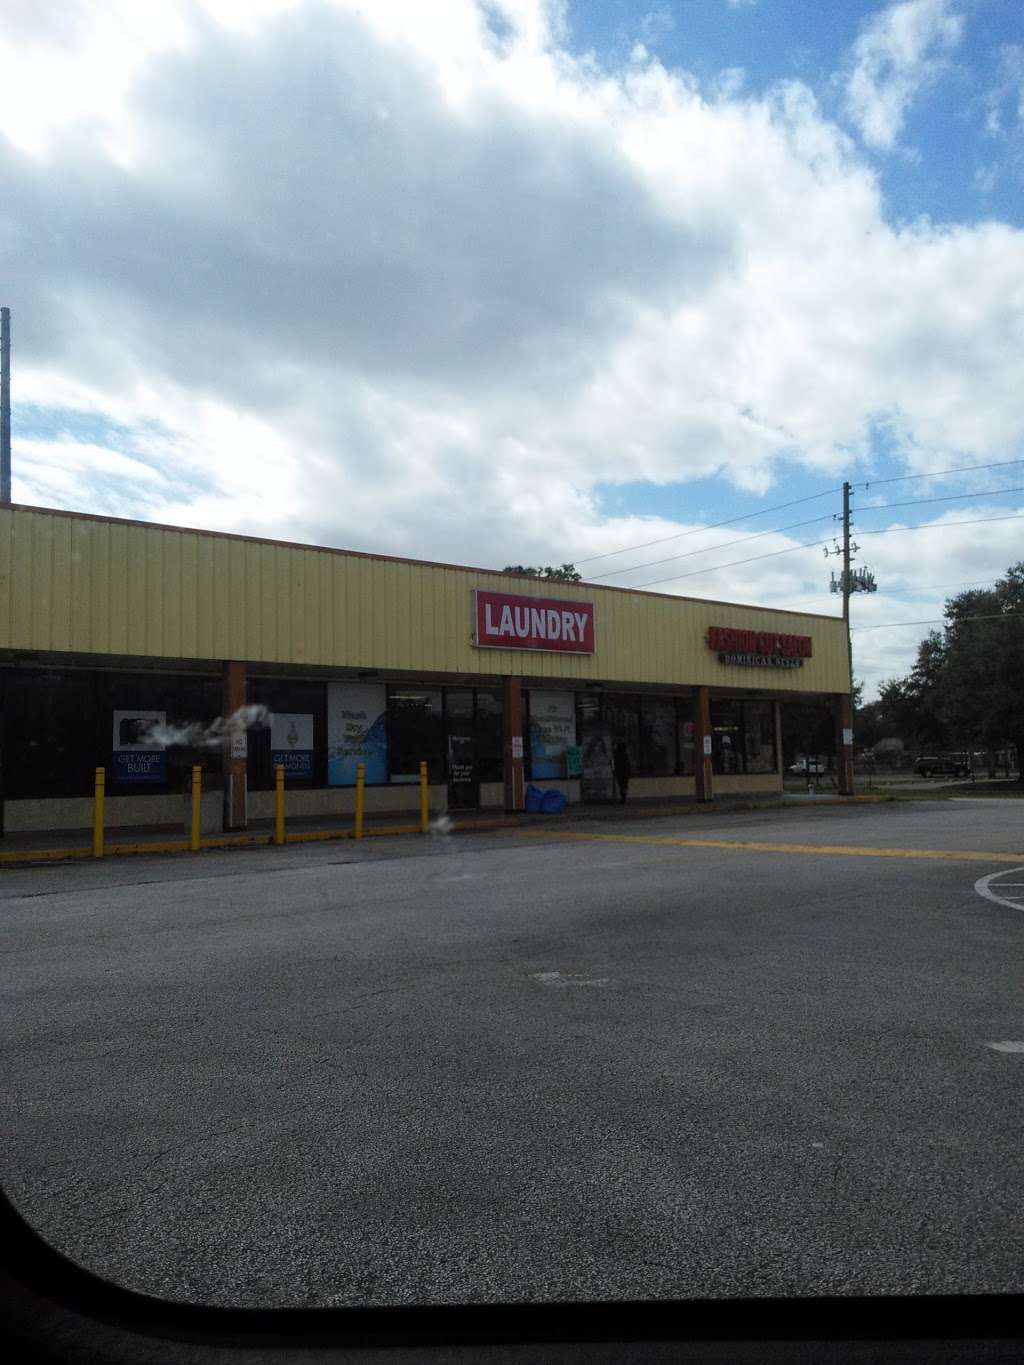 Laundromart Of East Orlando | 11624 E Colonial Dr, Orlando, FL 32817 | Phone: (407) 900-8846